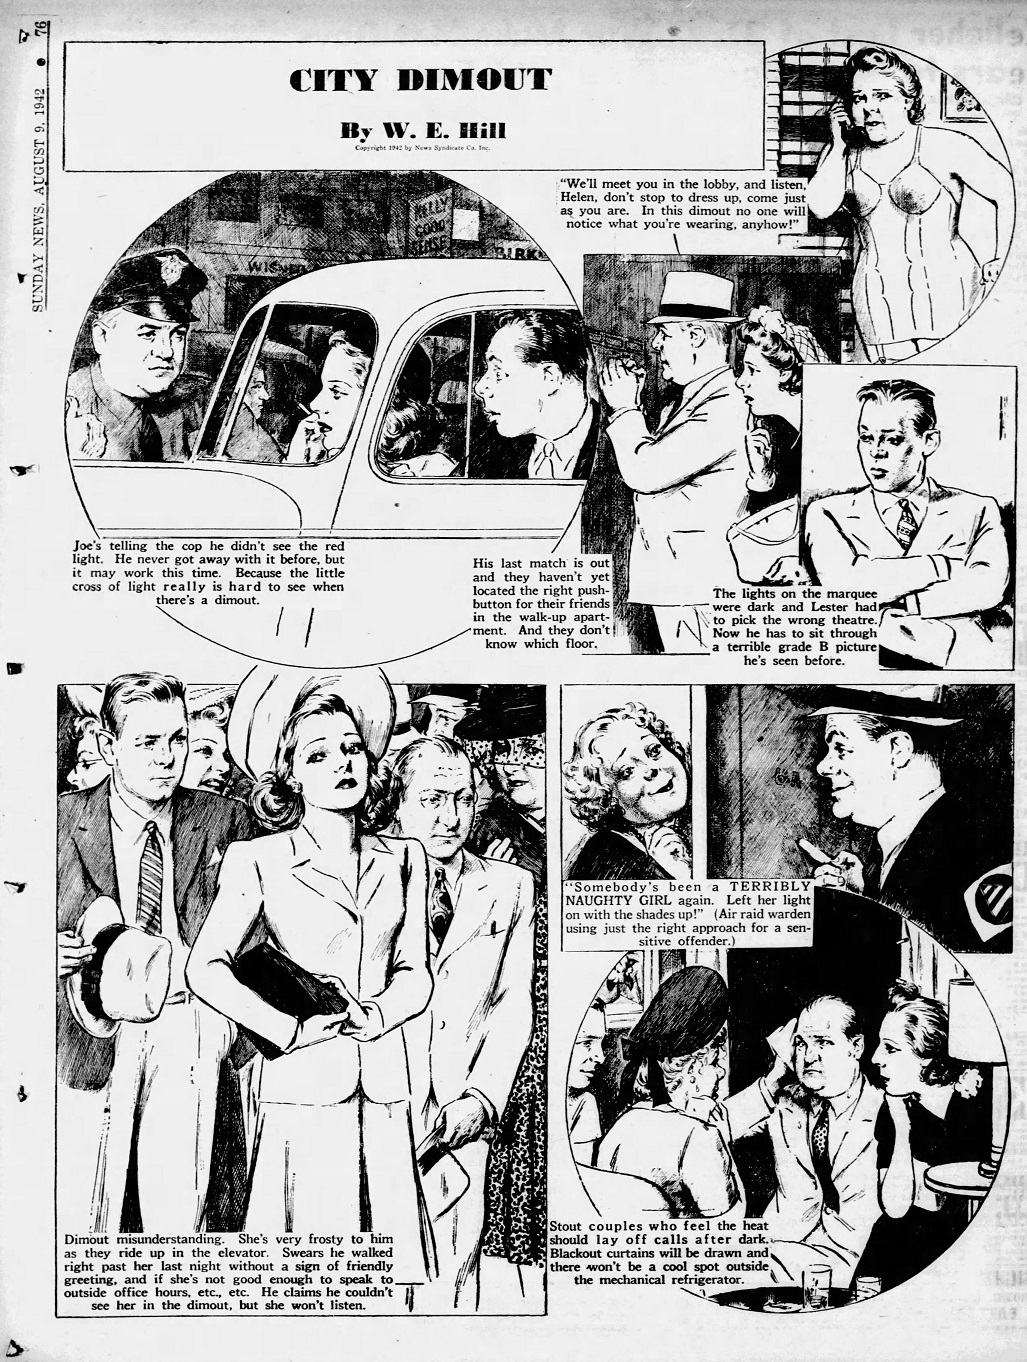 Daily_News_Sun__Aug_9__1942_(1).jpg